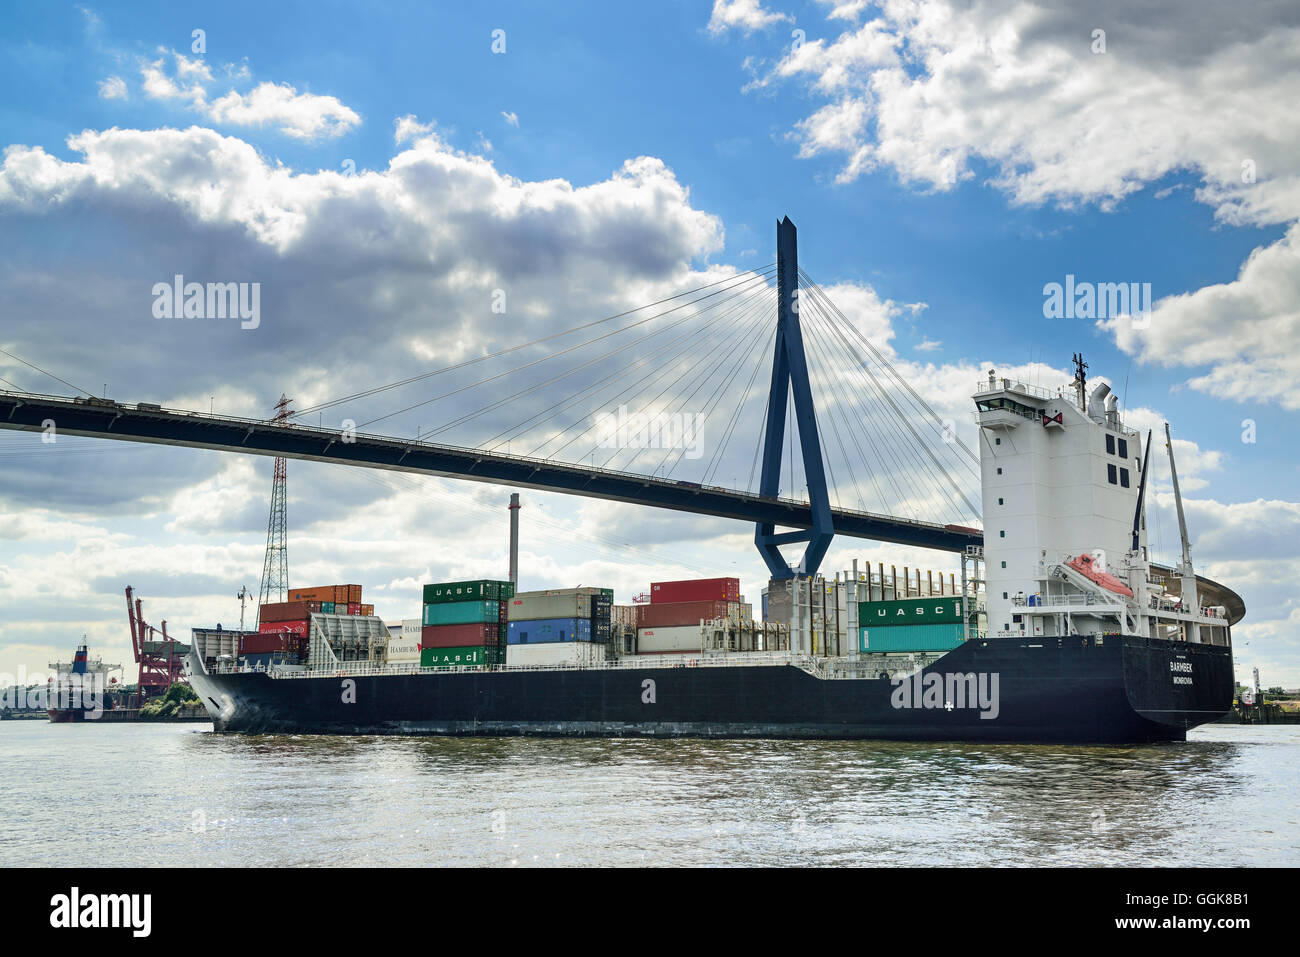 Container-Schiff auf der Elbe unterhalb der Koehlbrandbruecke Brücke, Fluss Elbe, Hamburg, Deutschland Stockfoto